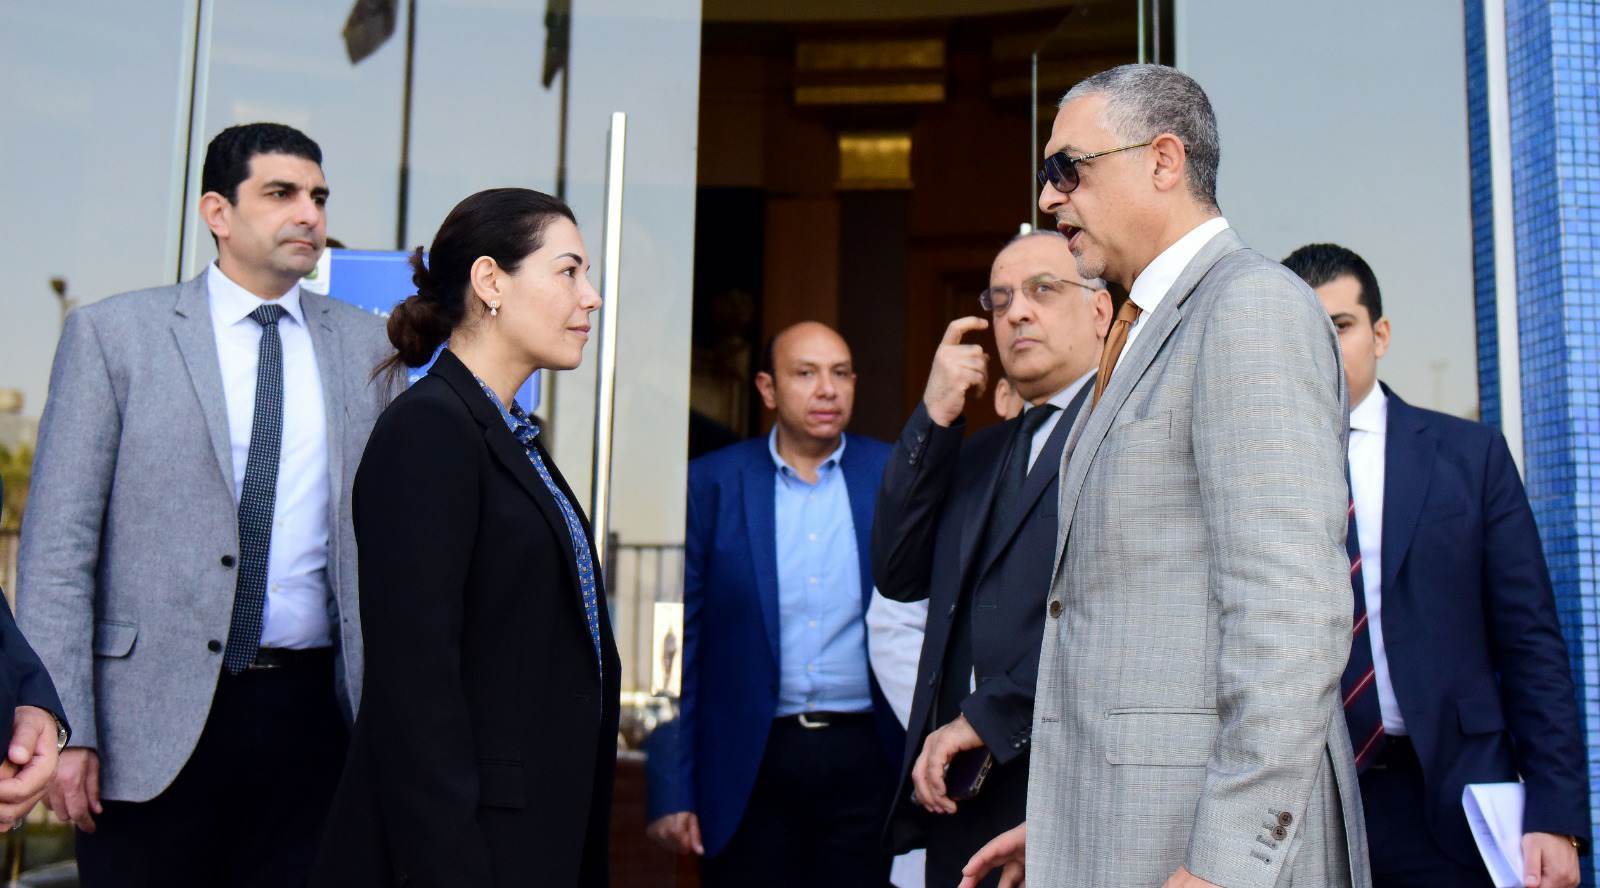 حسام هيبة رئيس هيئة الاستثمار مع ياسمين فريد رئيس مجموعة النساجون الشرقيون